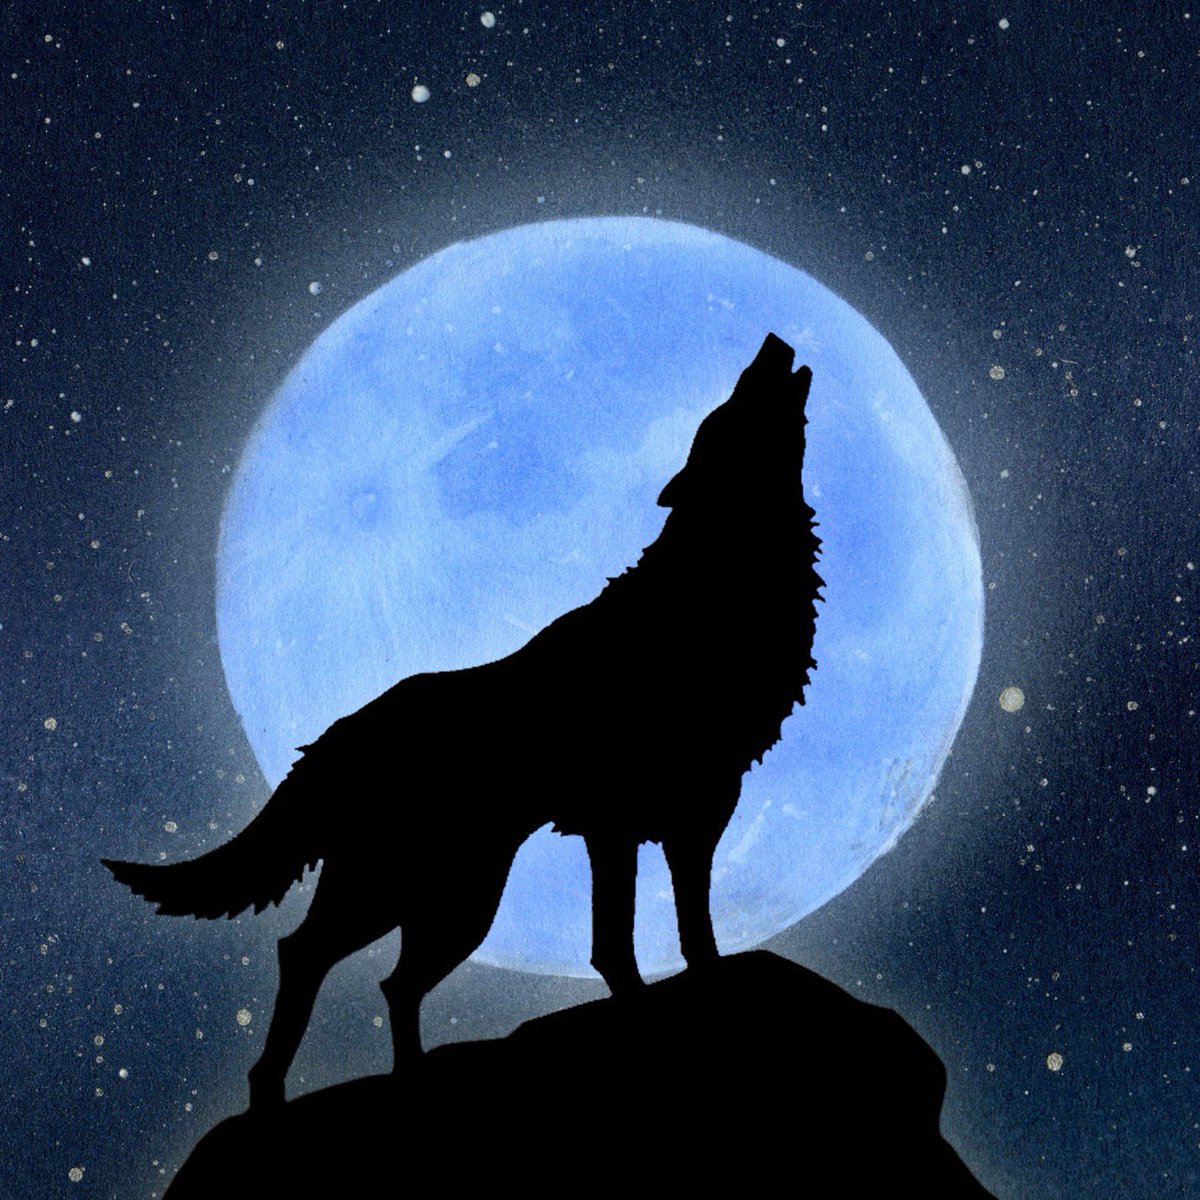 月と狼 のイラスト マンガ作品 10 件 Twoucan